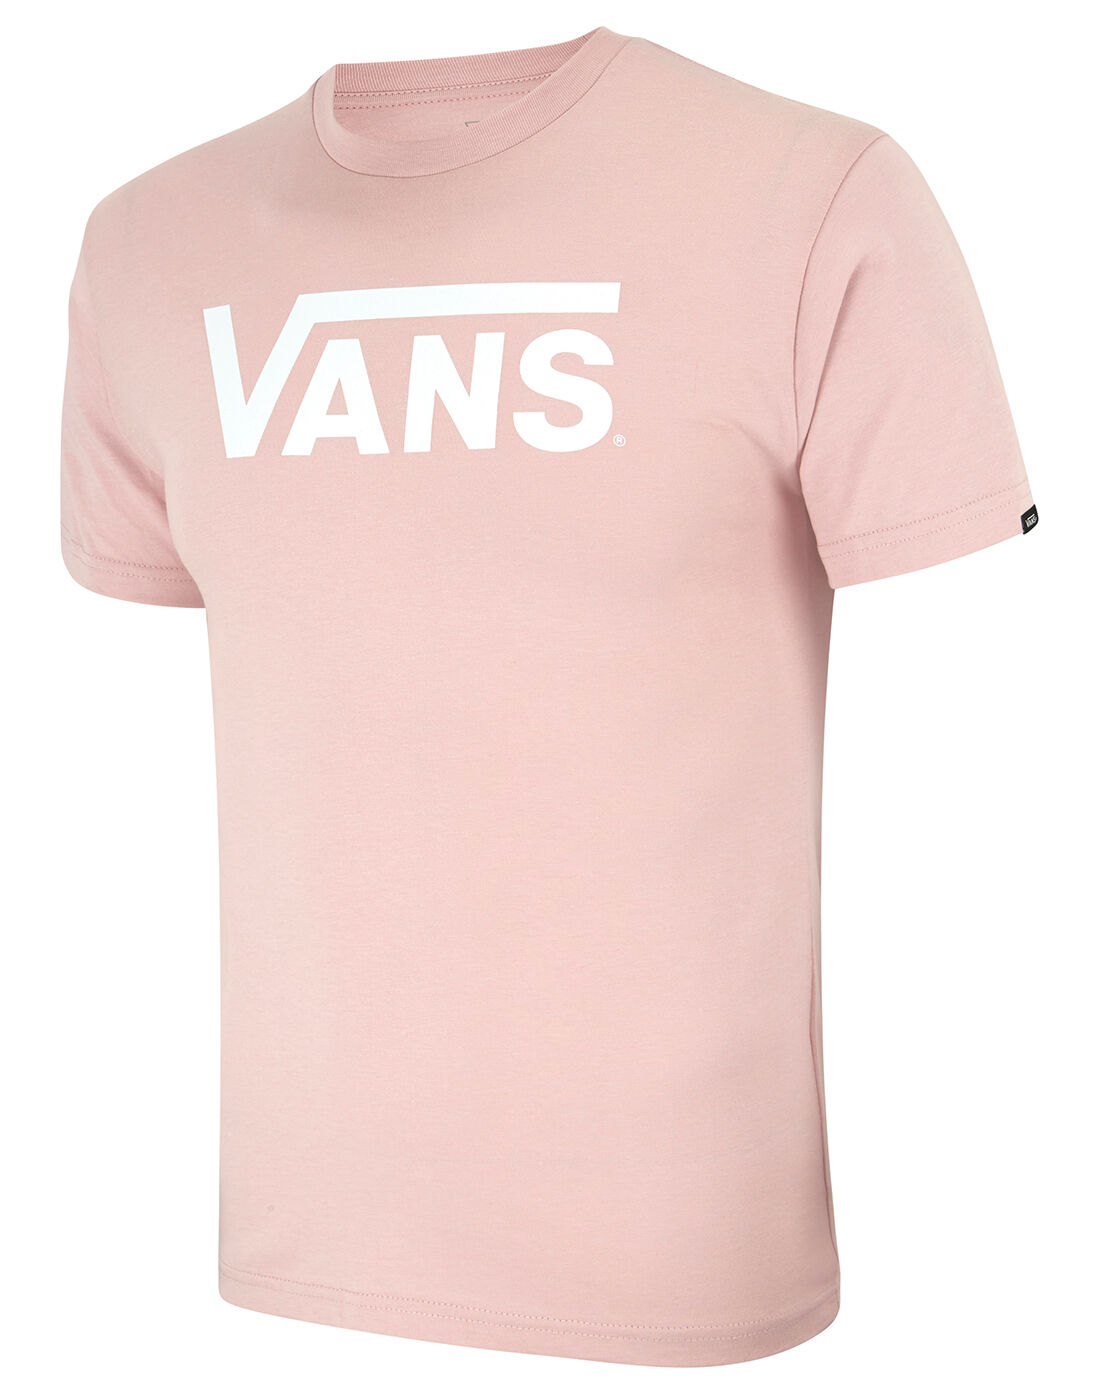 mens pink vans t shirt